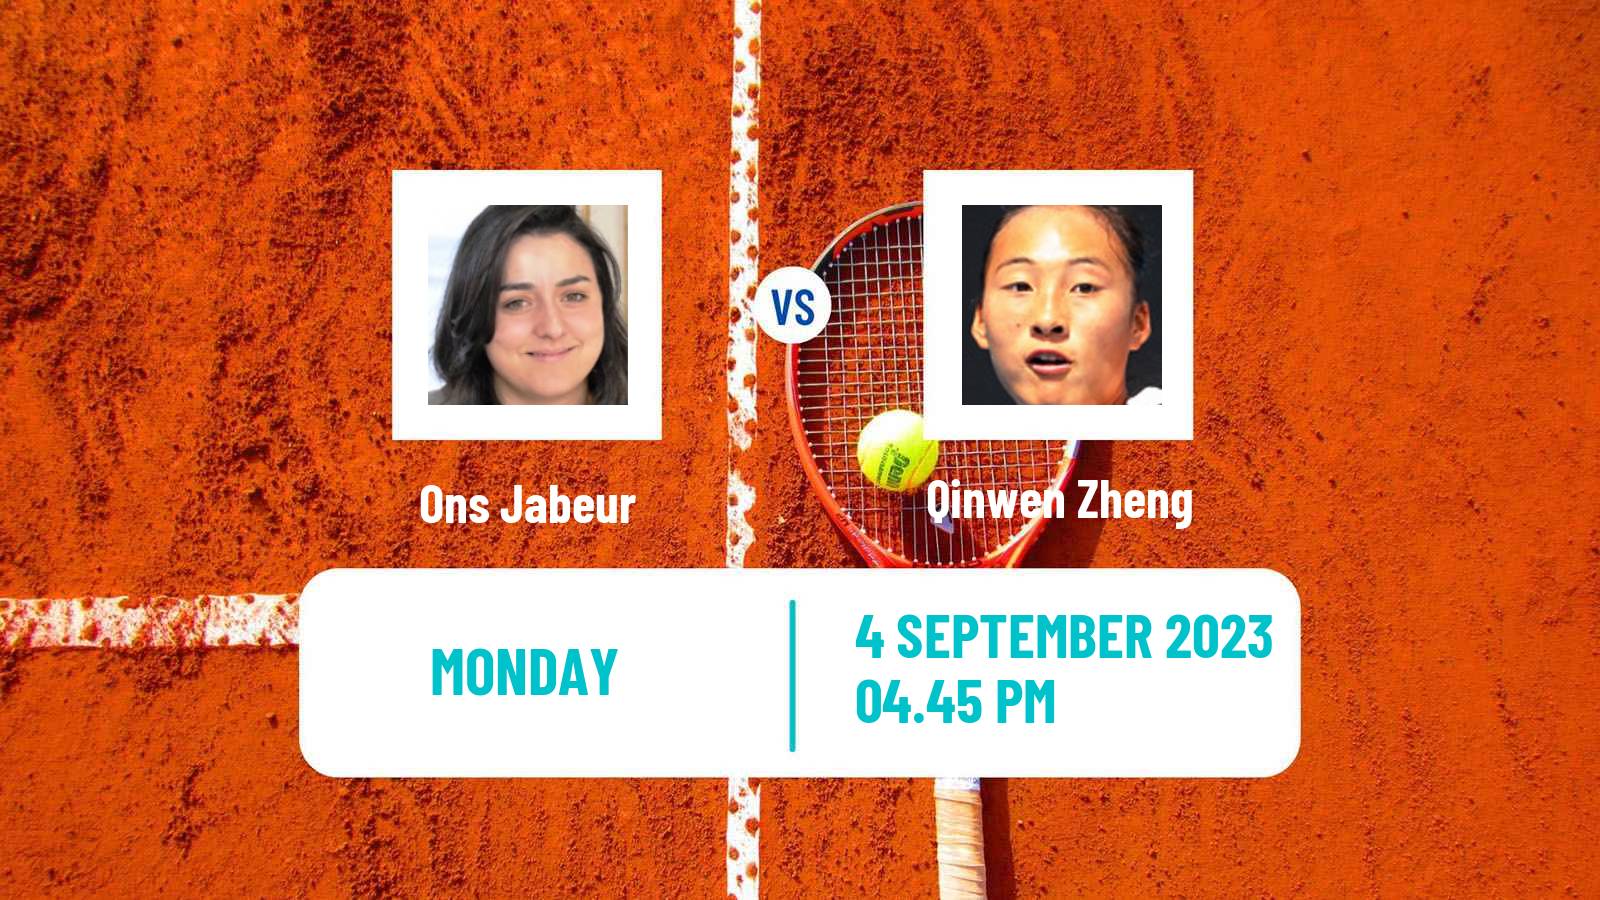 Tennis WTA US Open Ons Jabeur - Qinwen Zheng